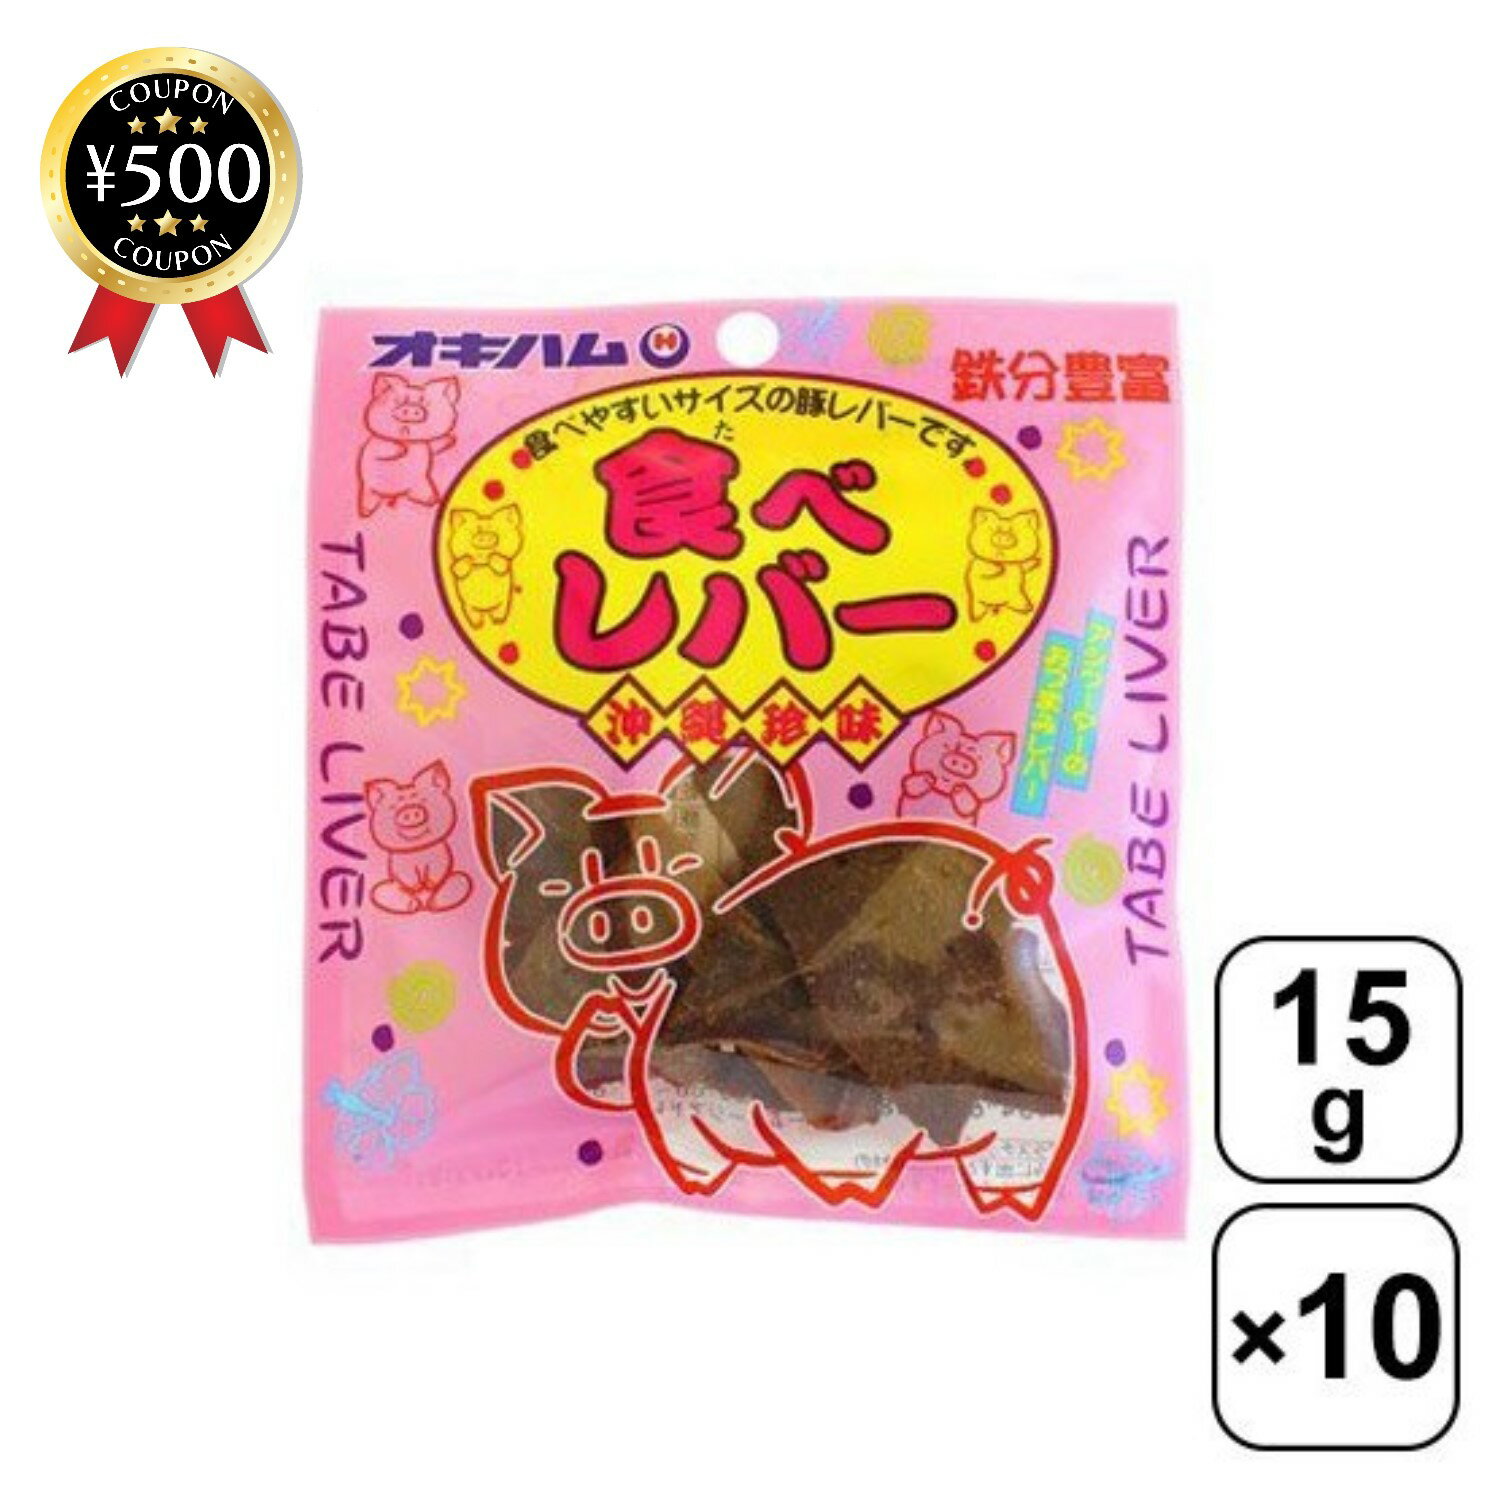 【レビュー書いて500円offクーポン】 食べレバー 15g×10袋 オキハム 豚のレバーをスライス ...